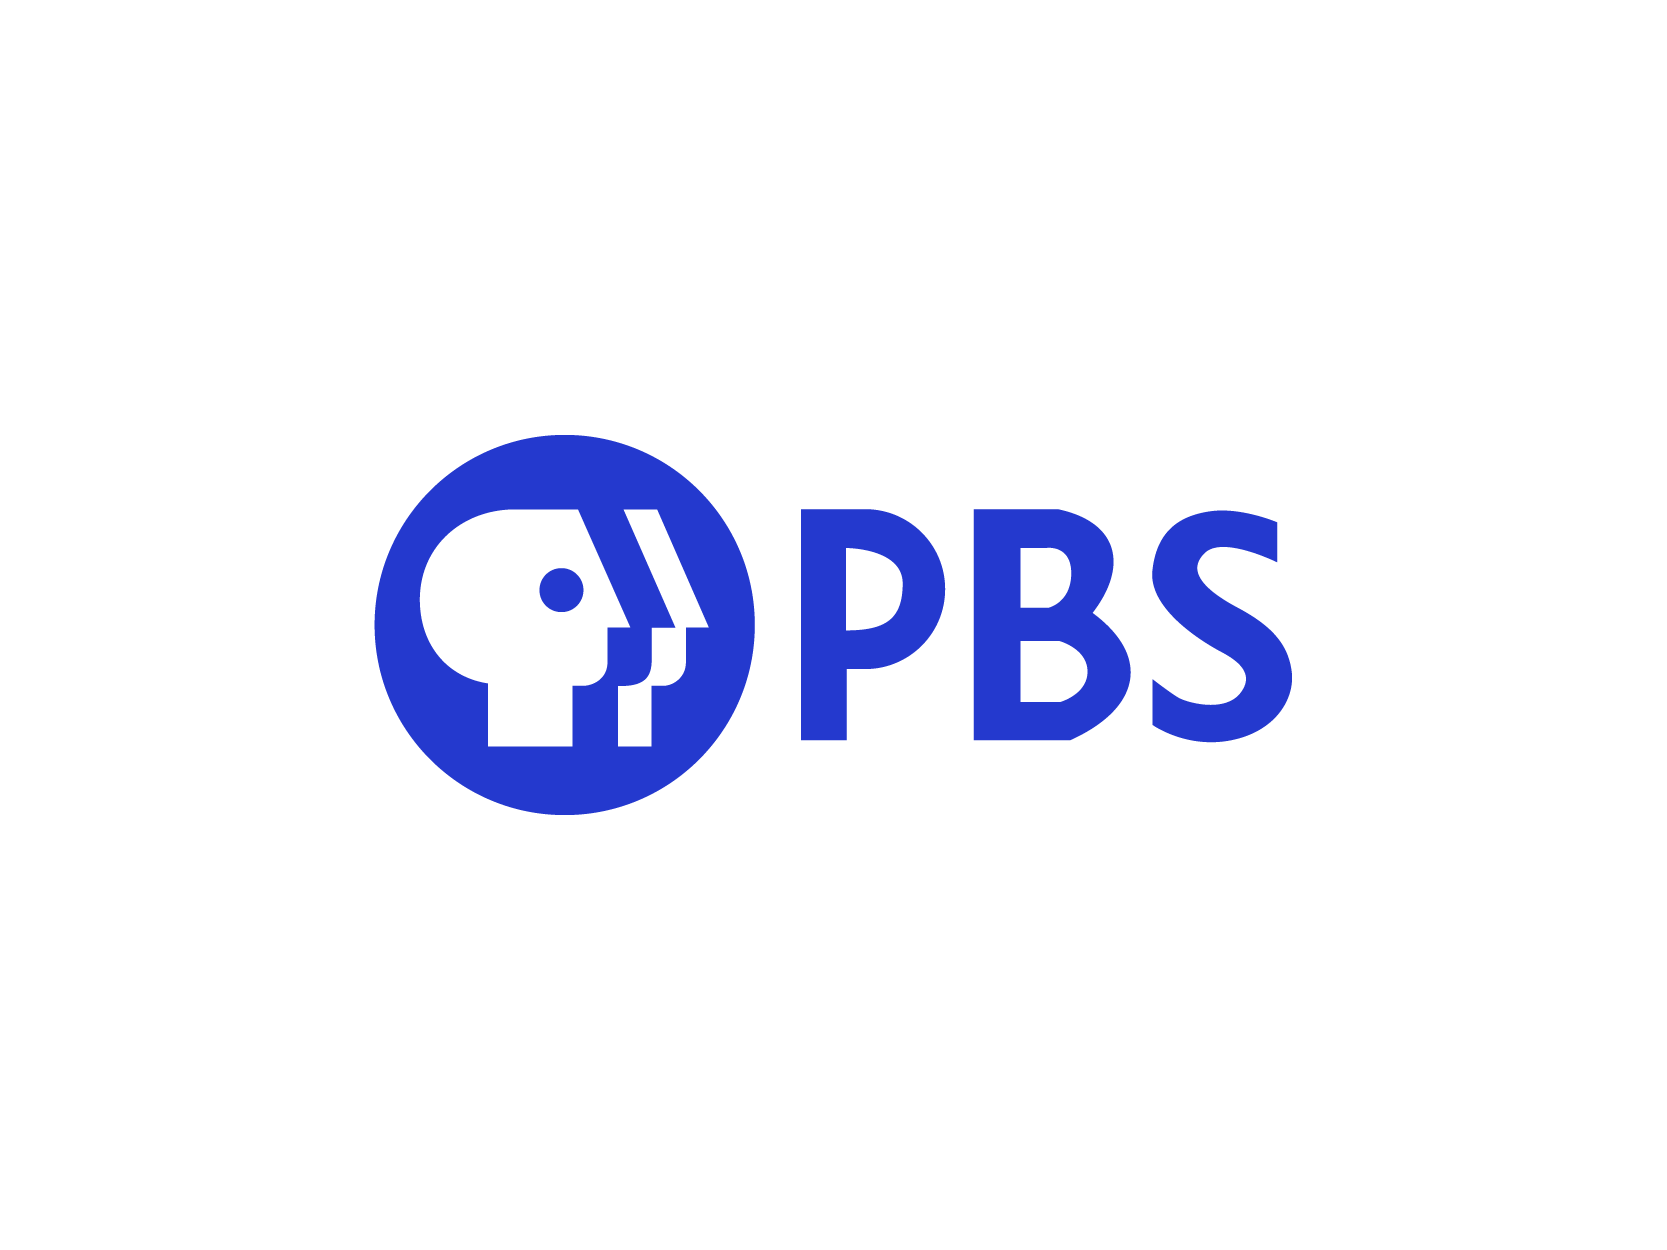 PBS美国公共电视台标志logo设计